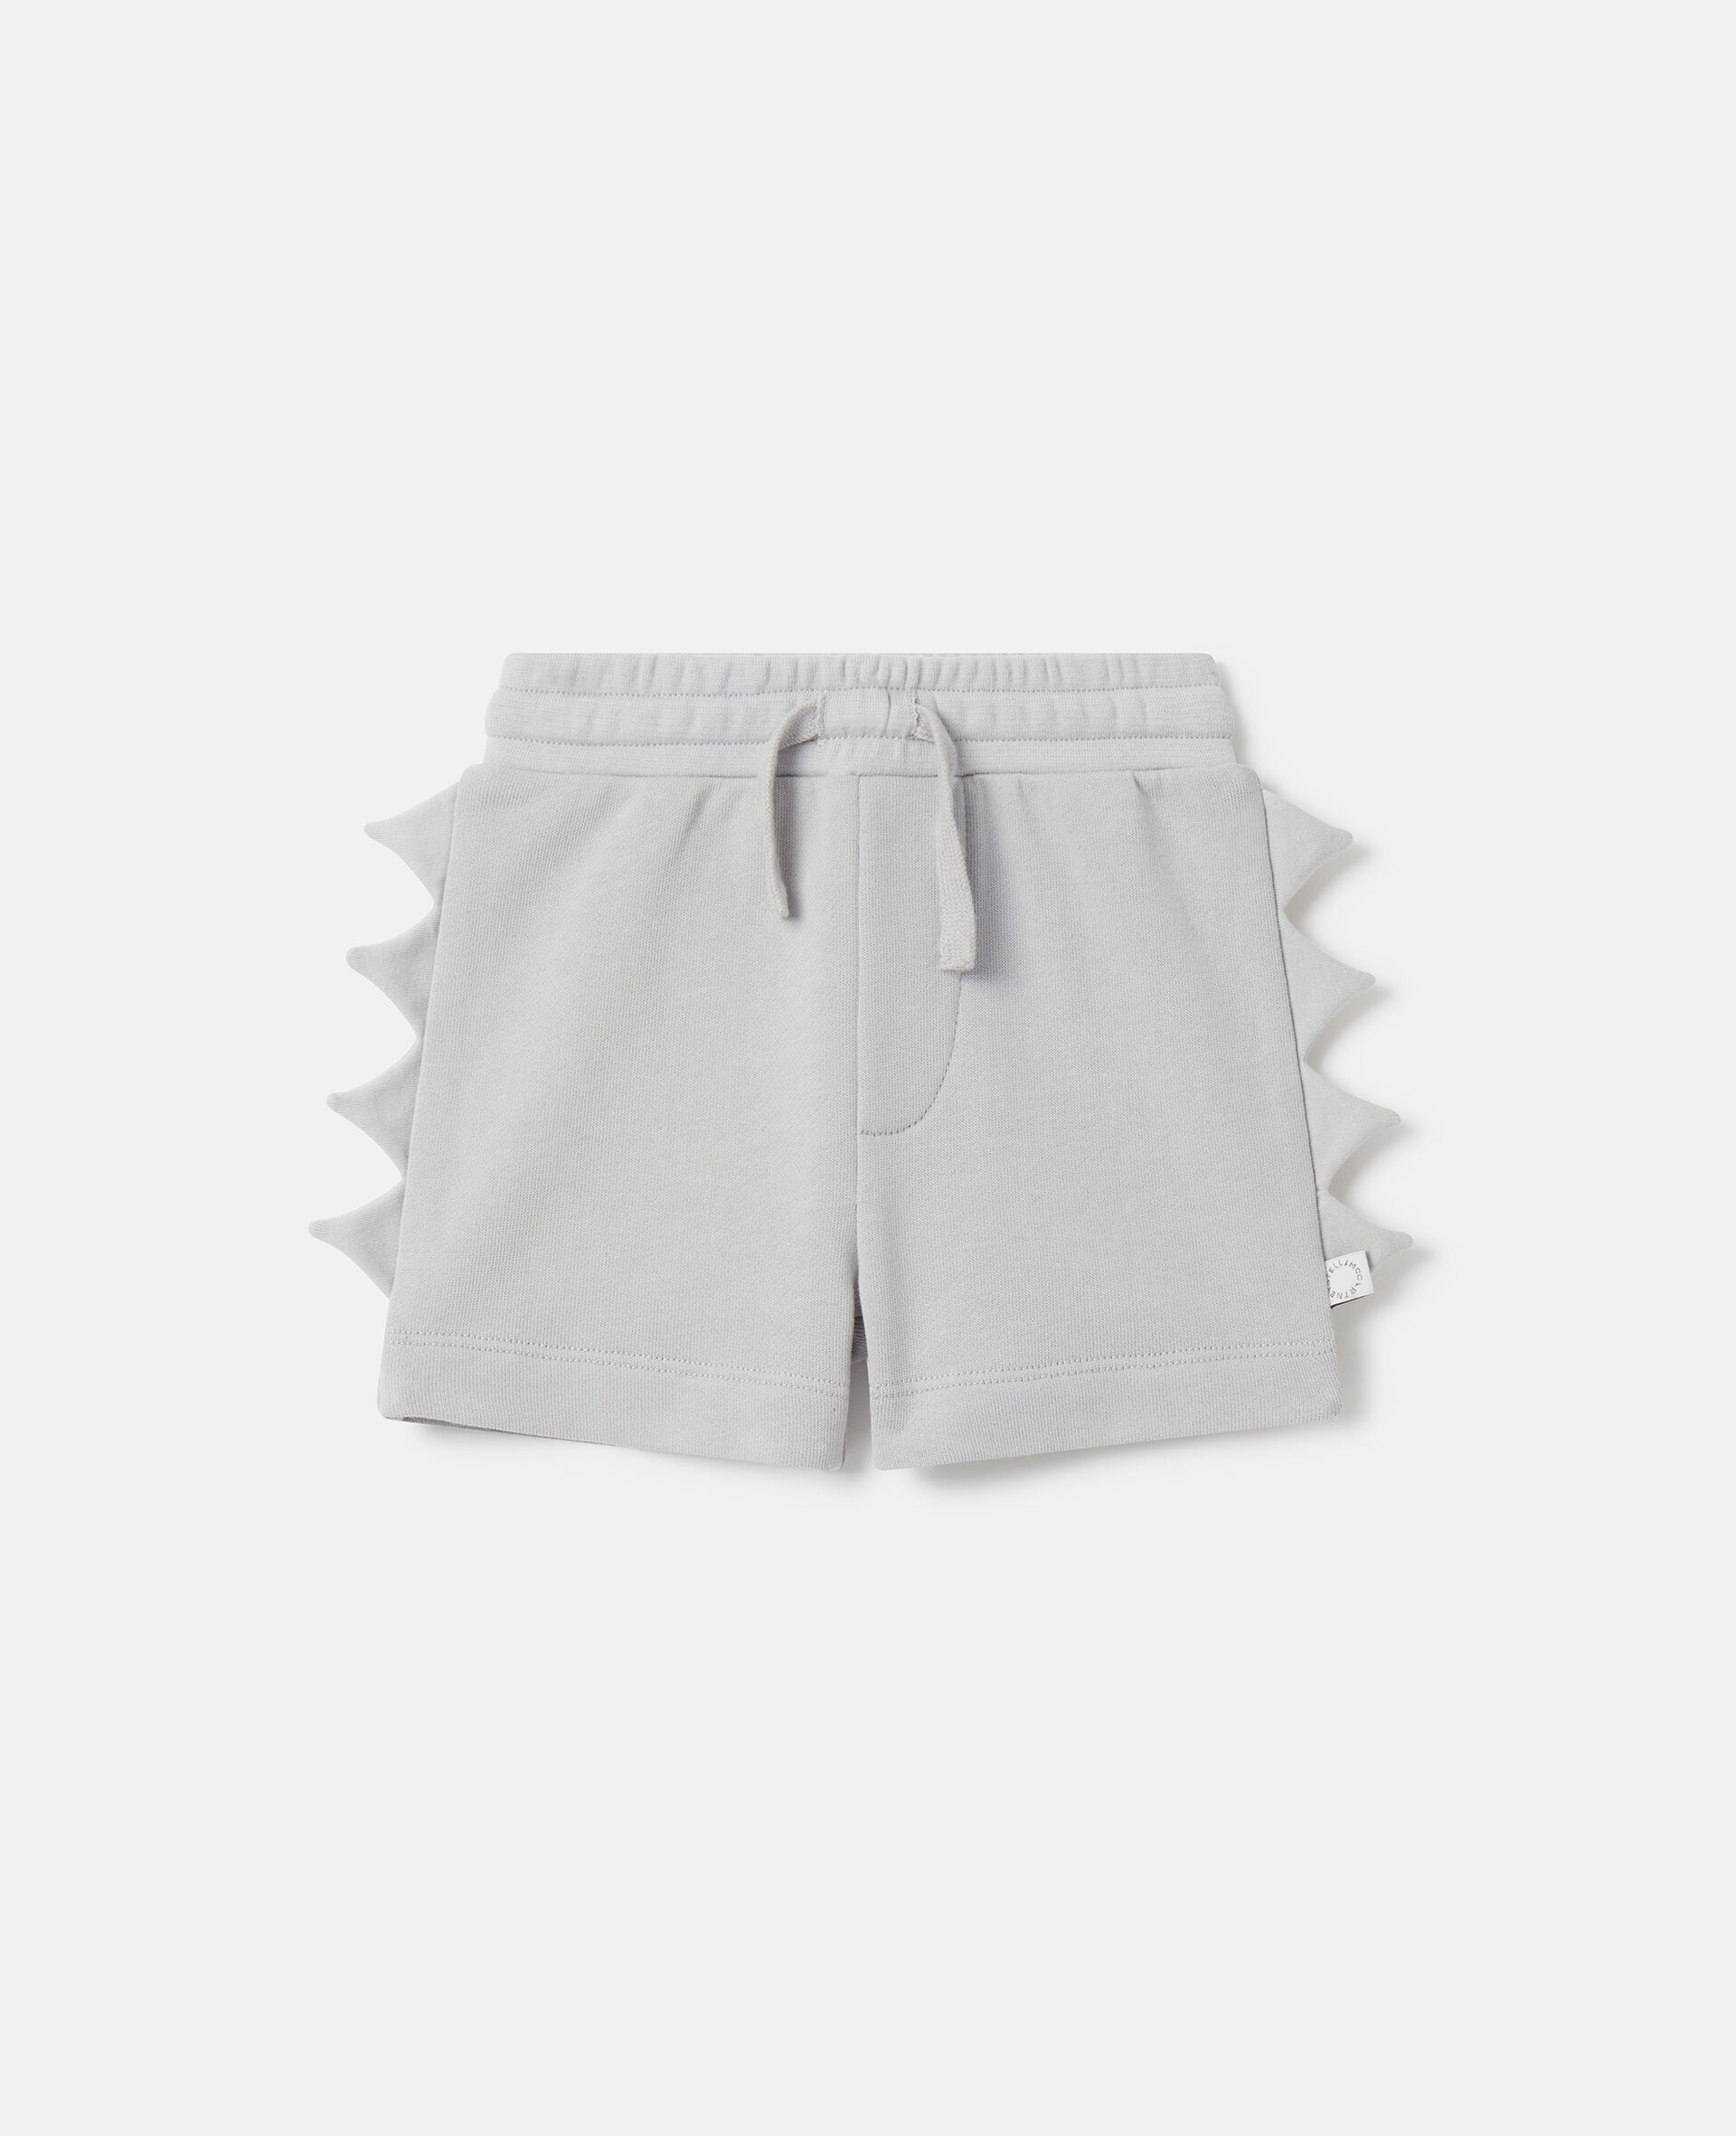 Shark Fin Spike Shorts-グレー-medium